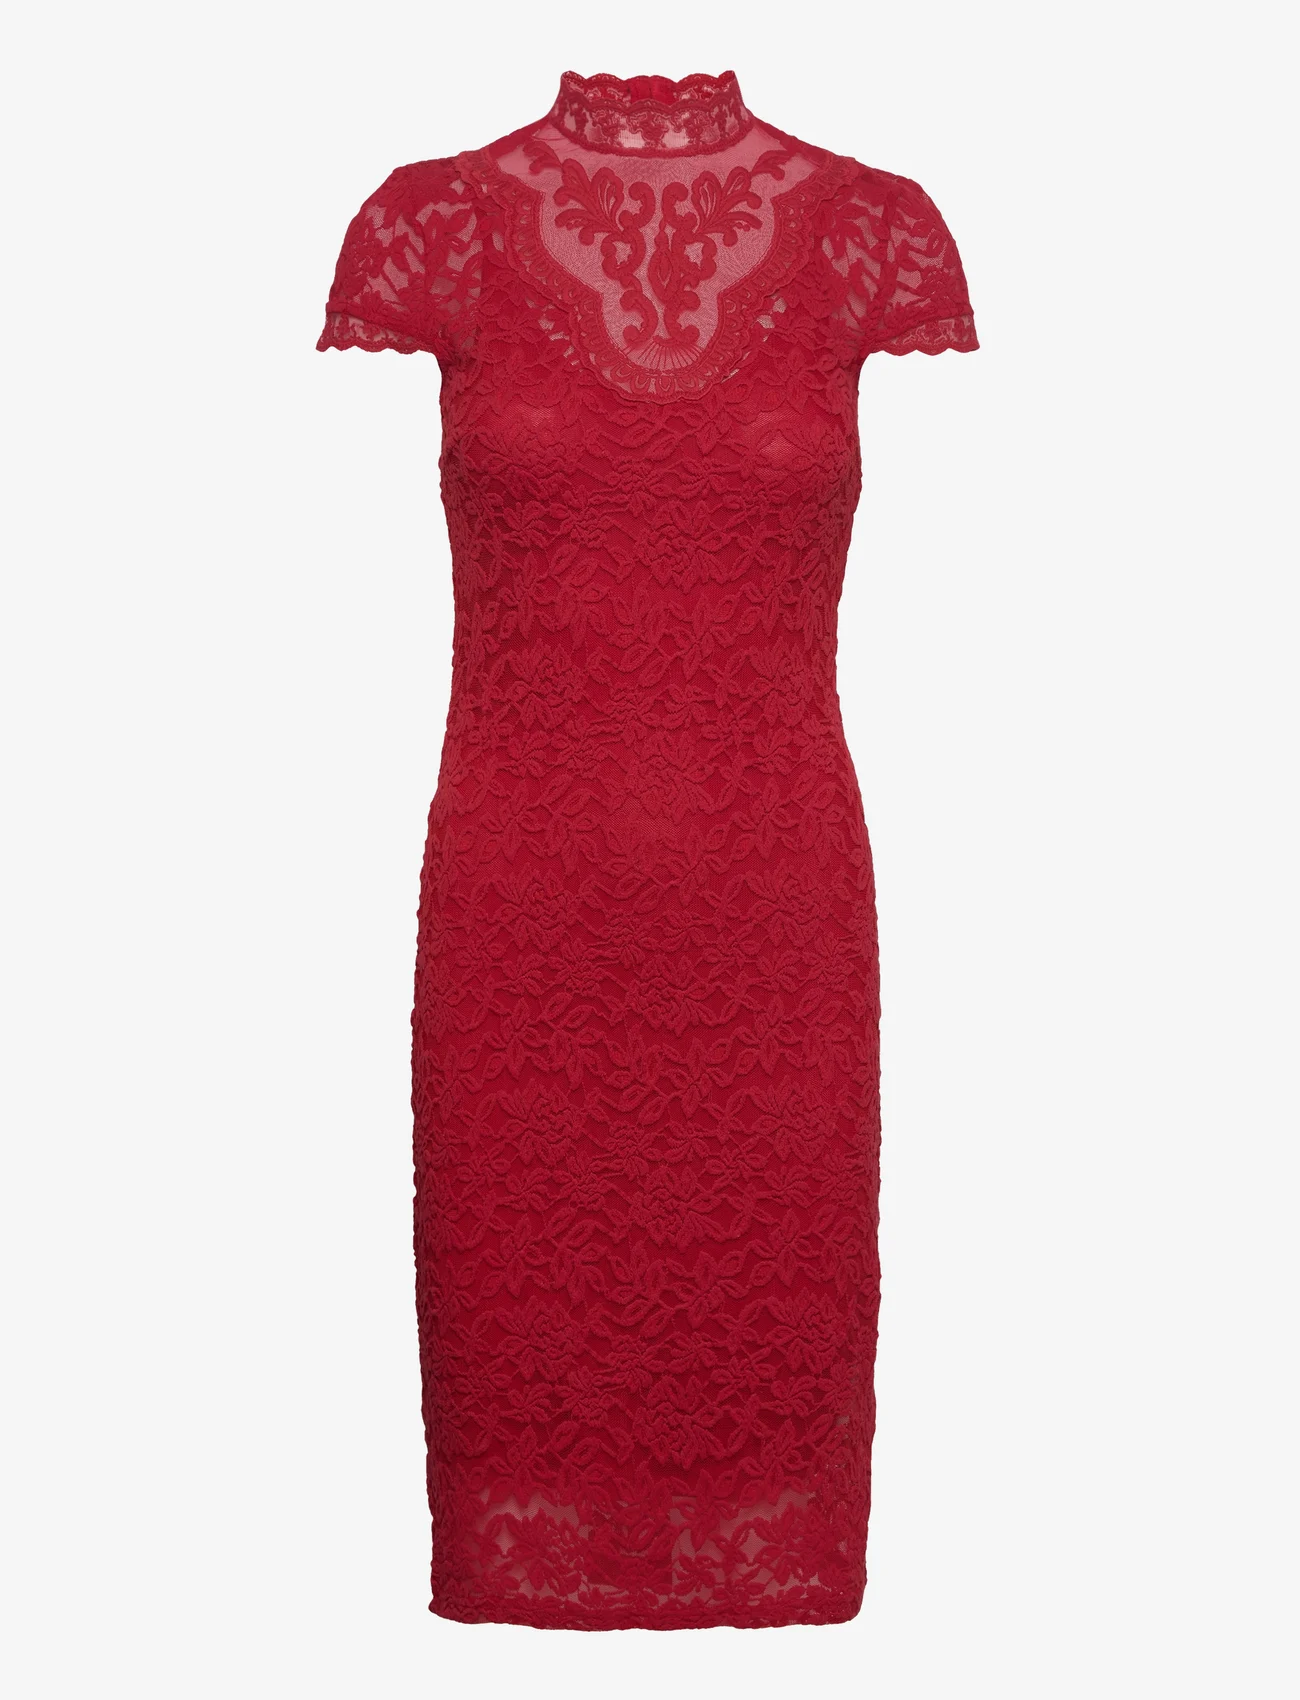 Rosemunde - Dress - stramme kjoler - cranberry - 0